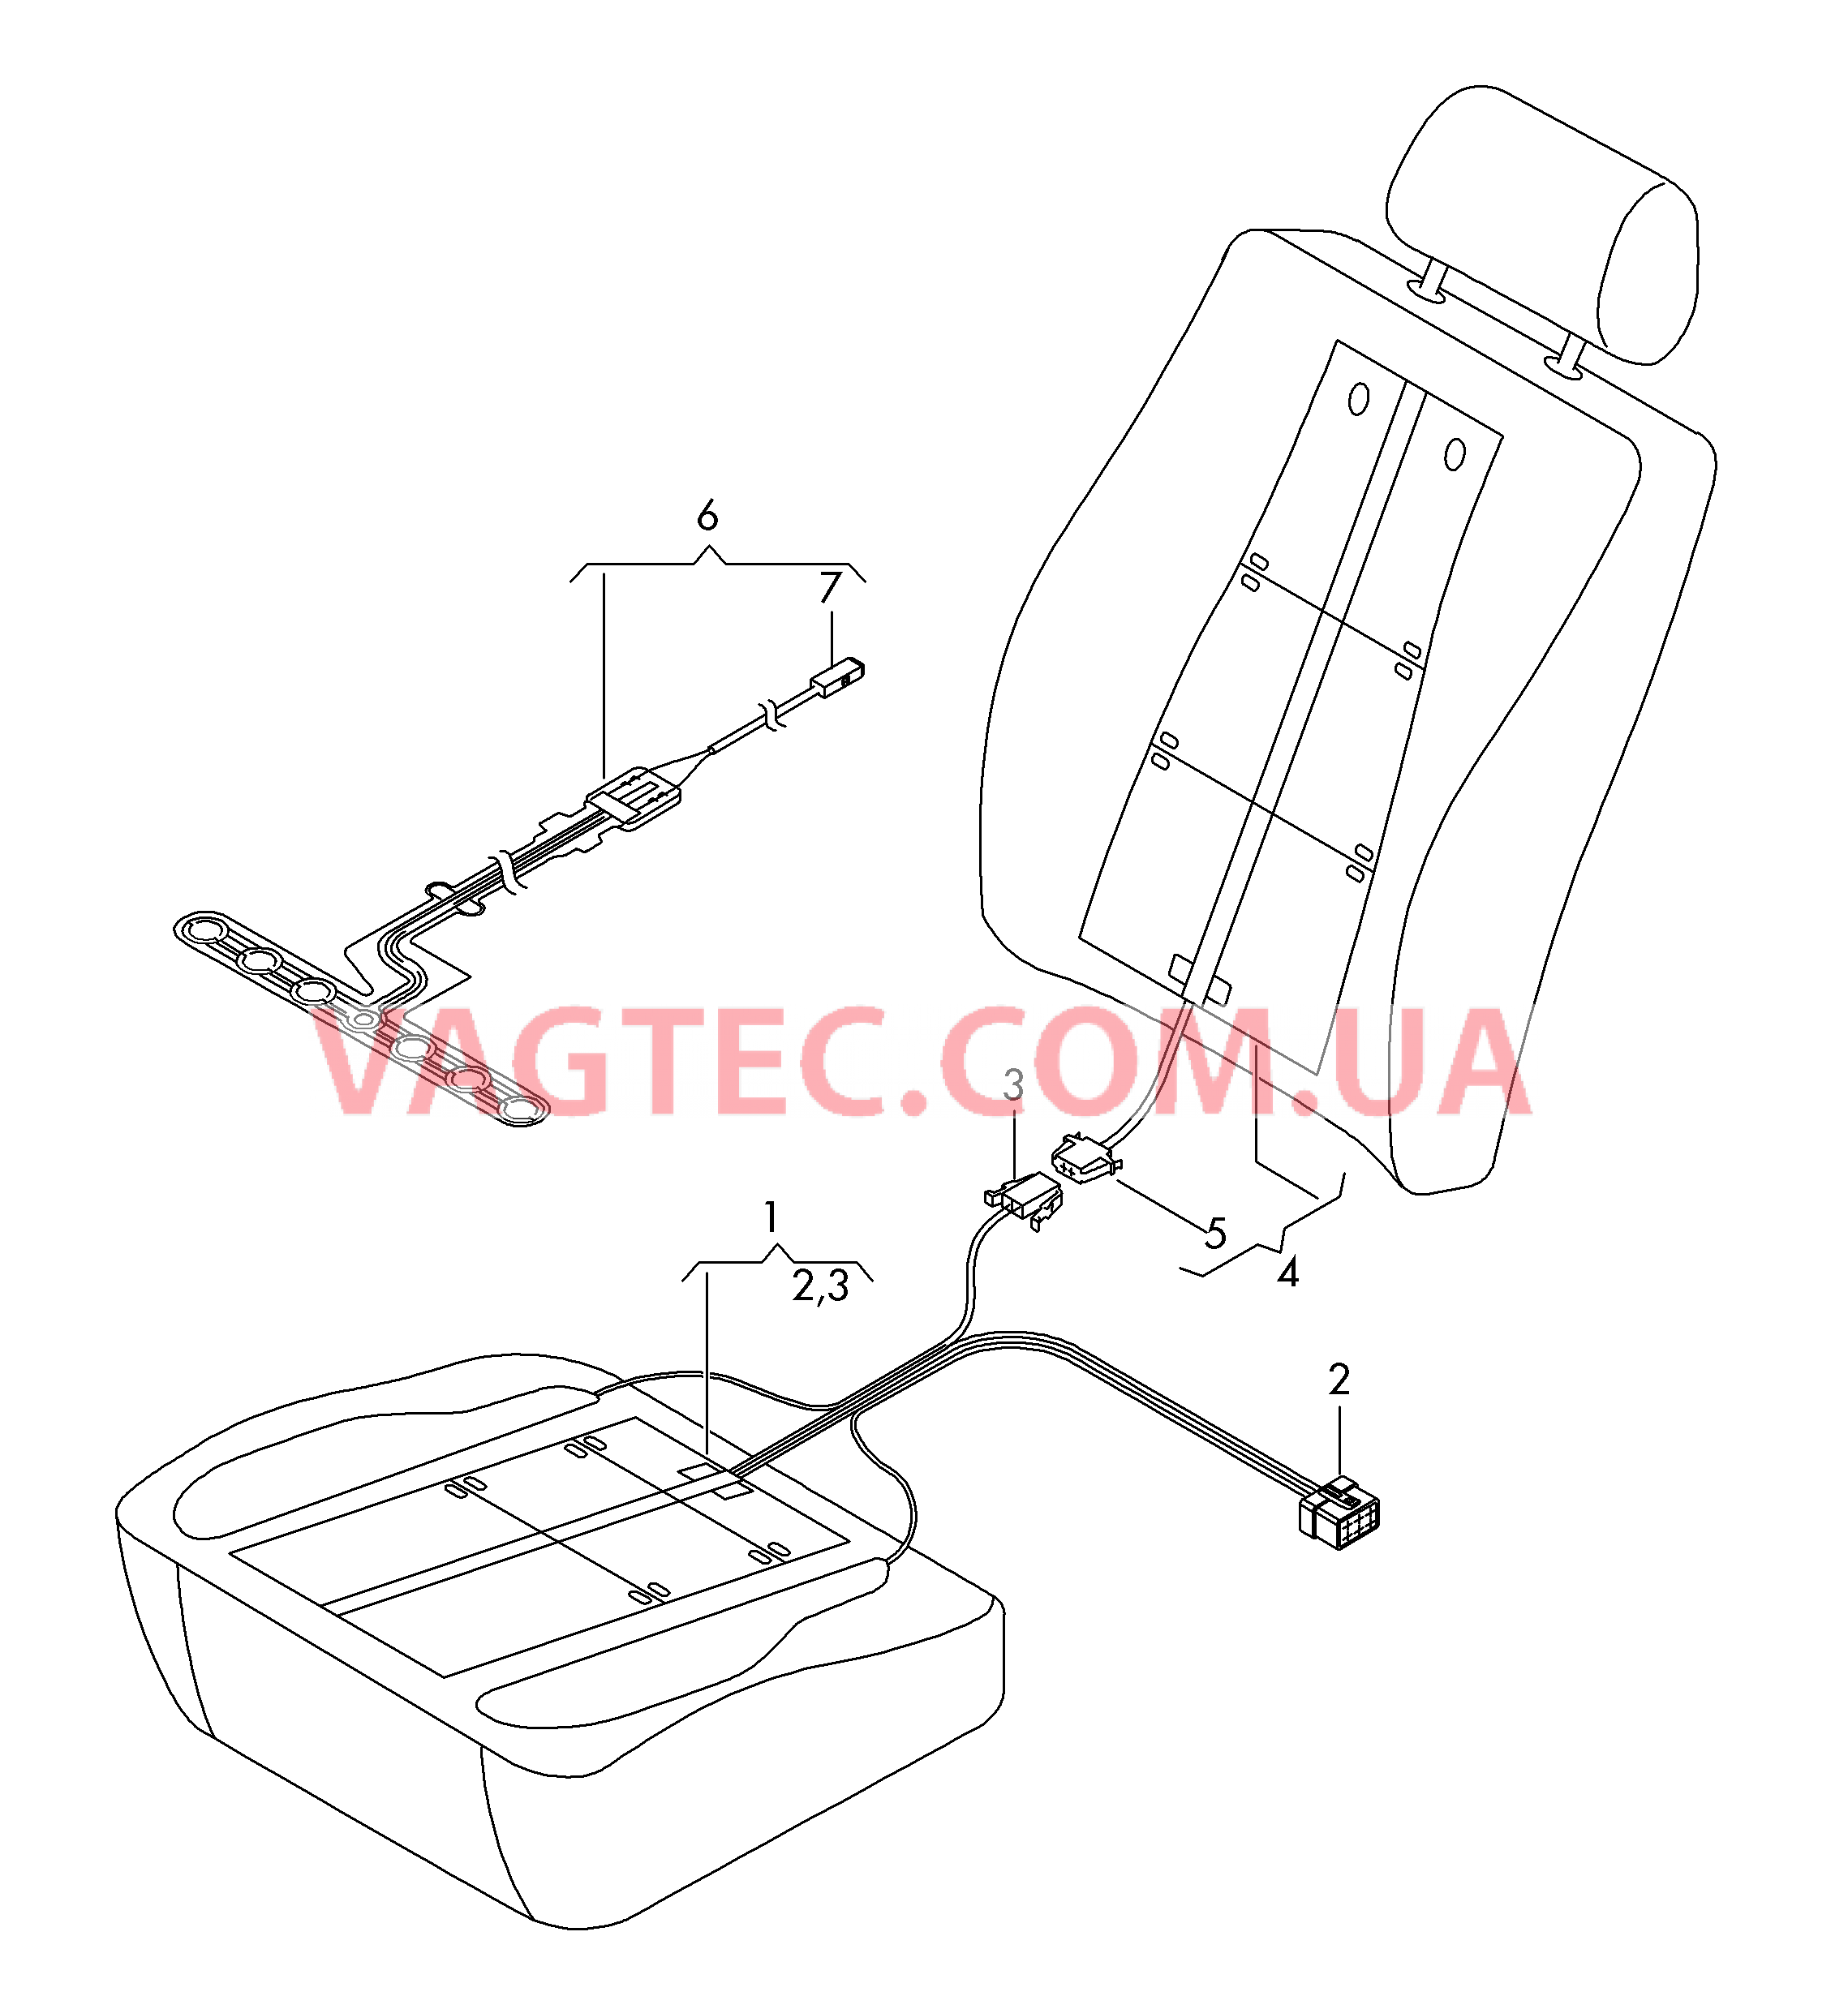 Нагревательный элемент спинки и подушки сиденья  Вставка распознавания занятости сиденья  для SEAT Leon 2016